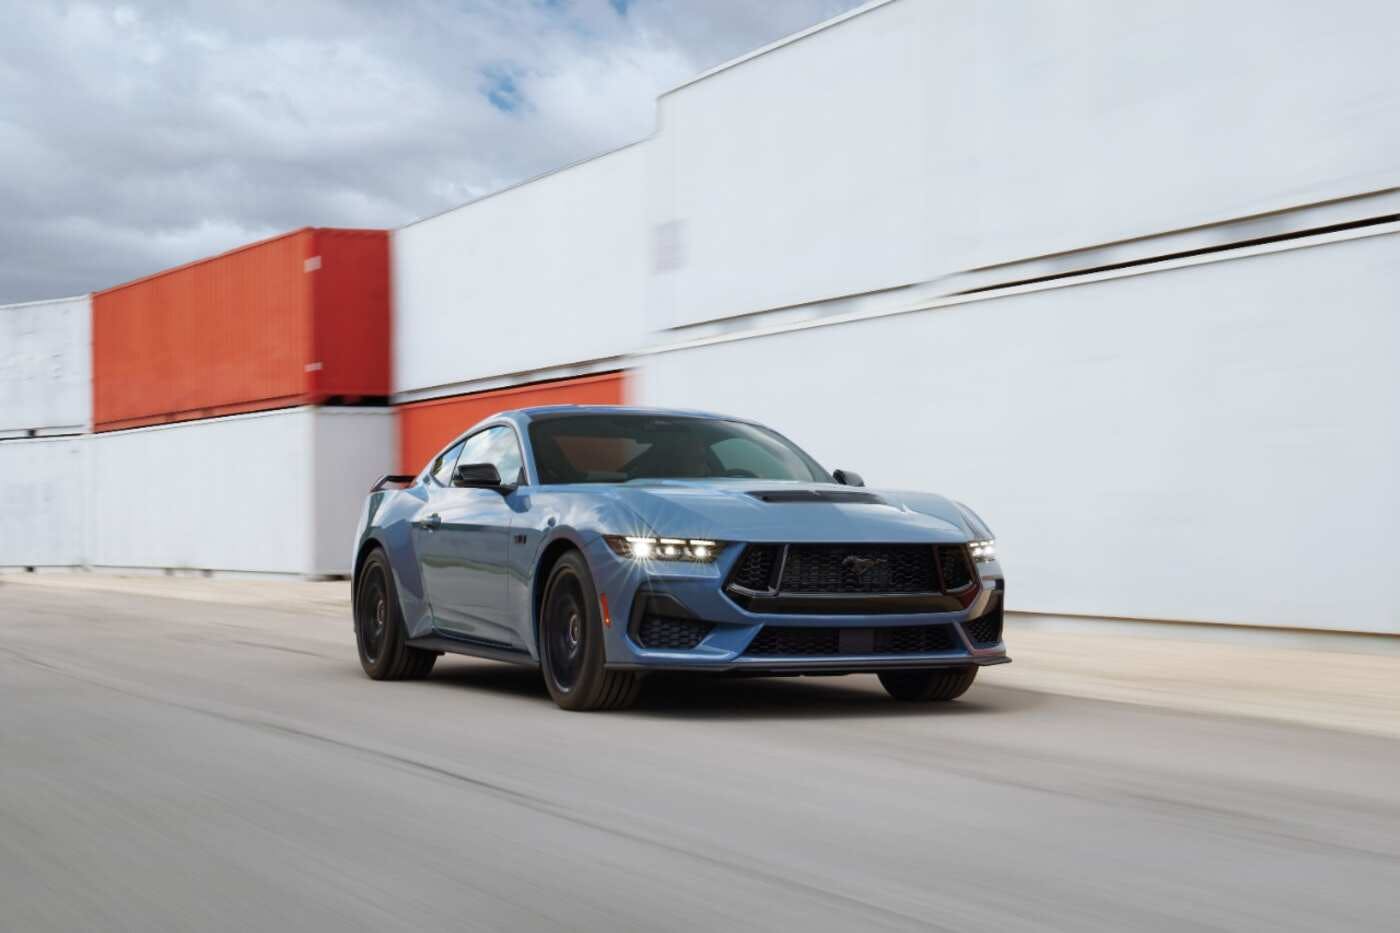 Ford Mustang Företagsleasing - Beställ din leasing online hos Ford business  fleet